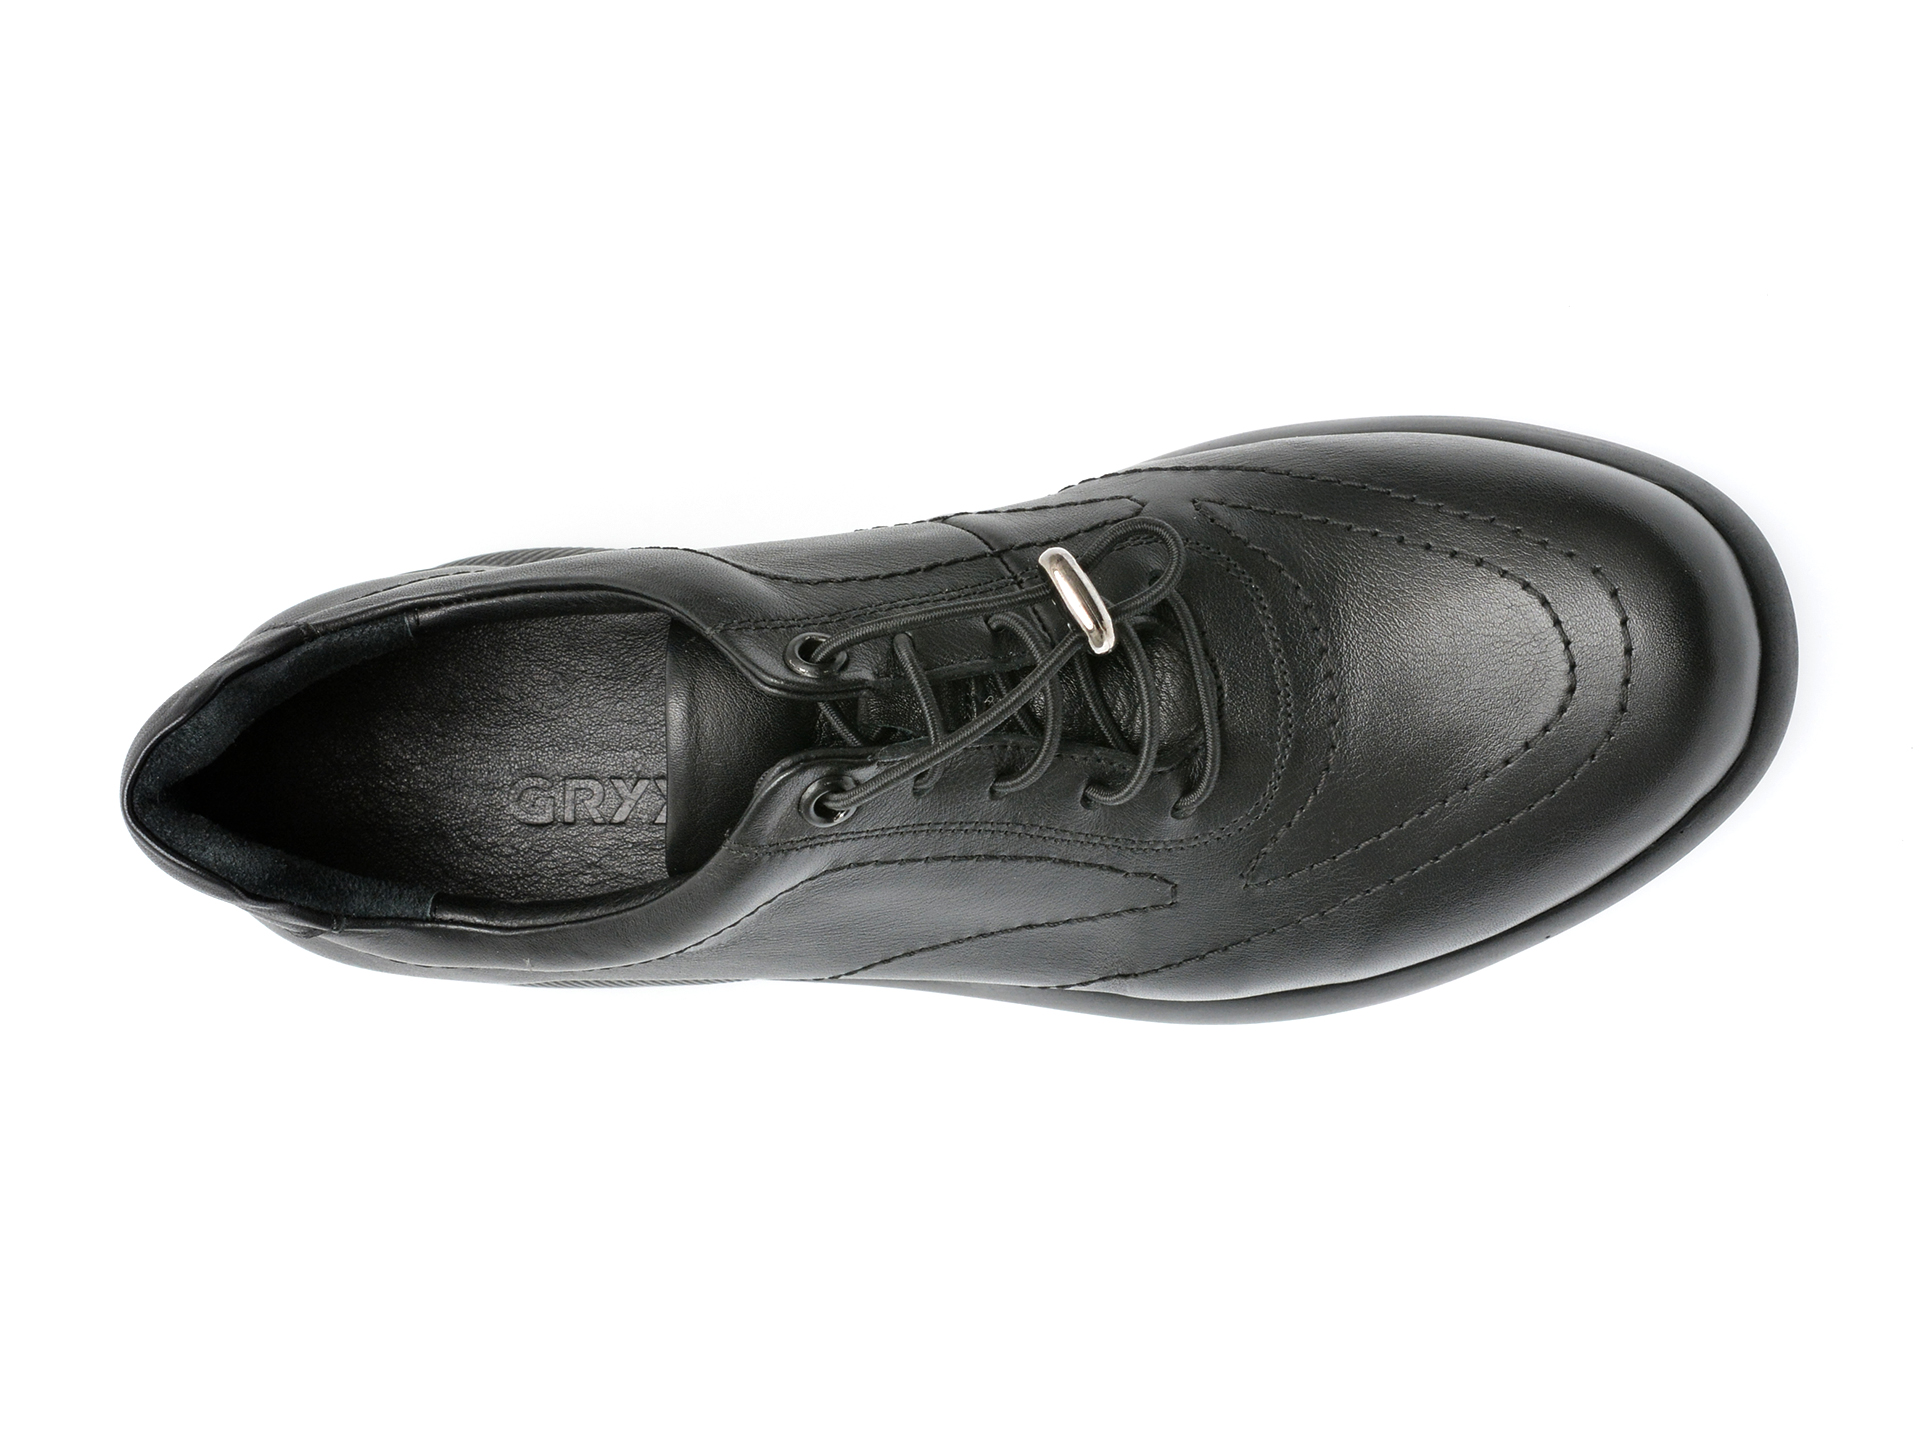 Poze Pantofi GRYXX negri, 12029, din piele naturala otter.ro